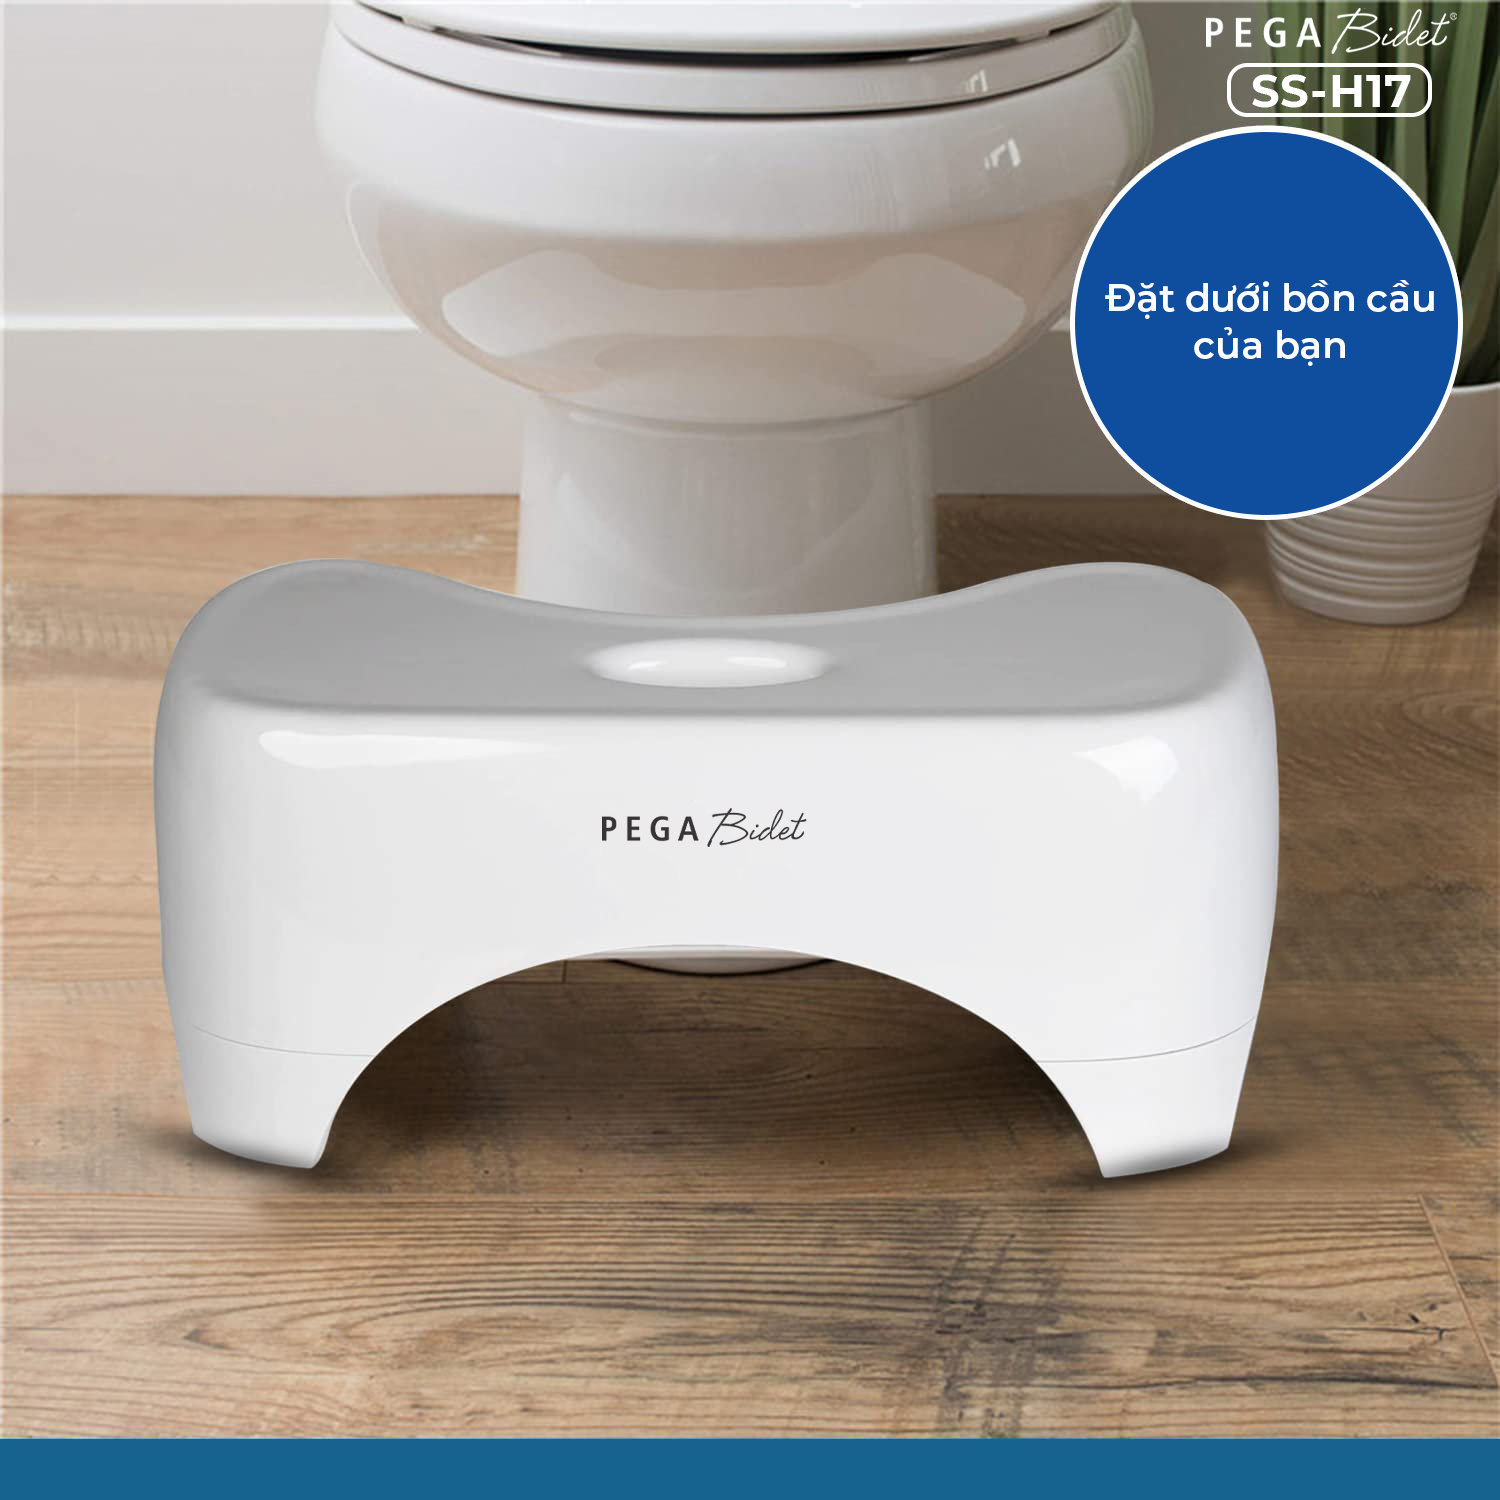 Ghế kê chân toilet PEGA Bidet SS-H22, hỗ trợ đi vệ sinh dễ dàng và thoải mái chống táo bón, làm từ nhựa y tế, ưa chuộng tại Mỹ